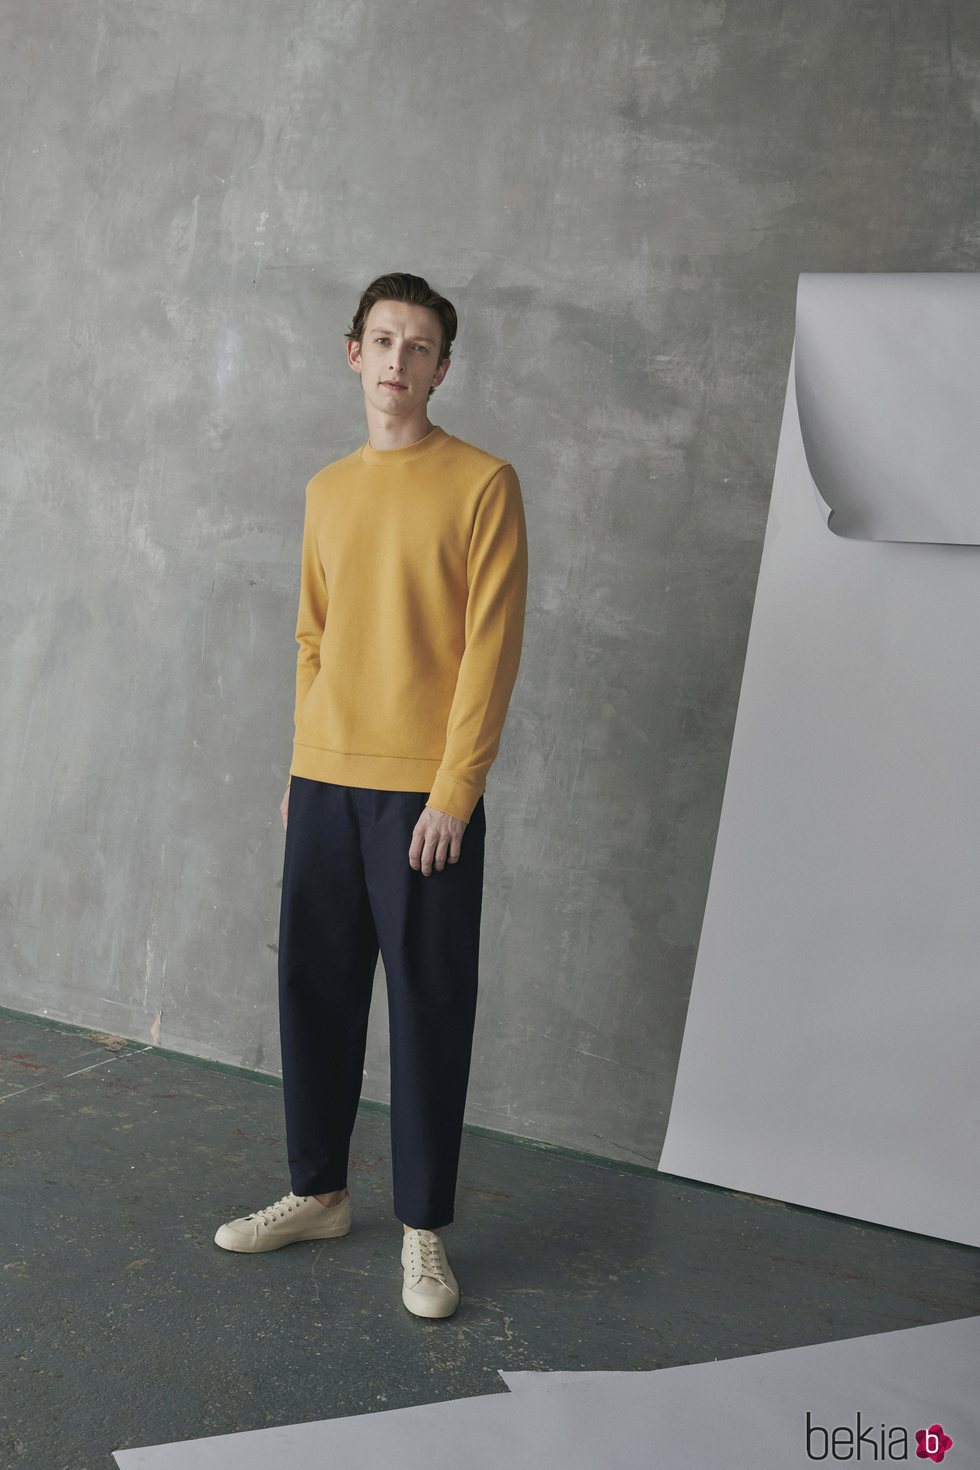 Suéter amarillo y pantalón ancho azul marino de hombre de la colección de COS-Paperbase primavera/verano 2018